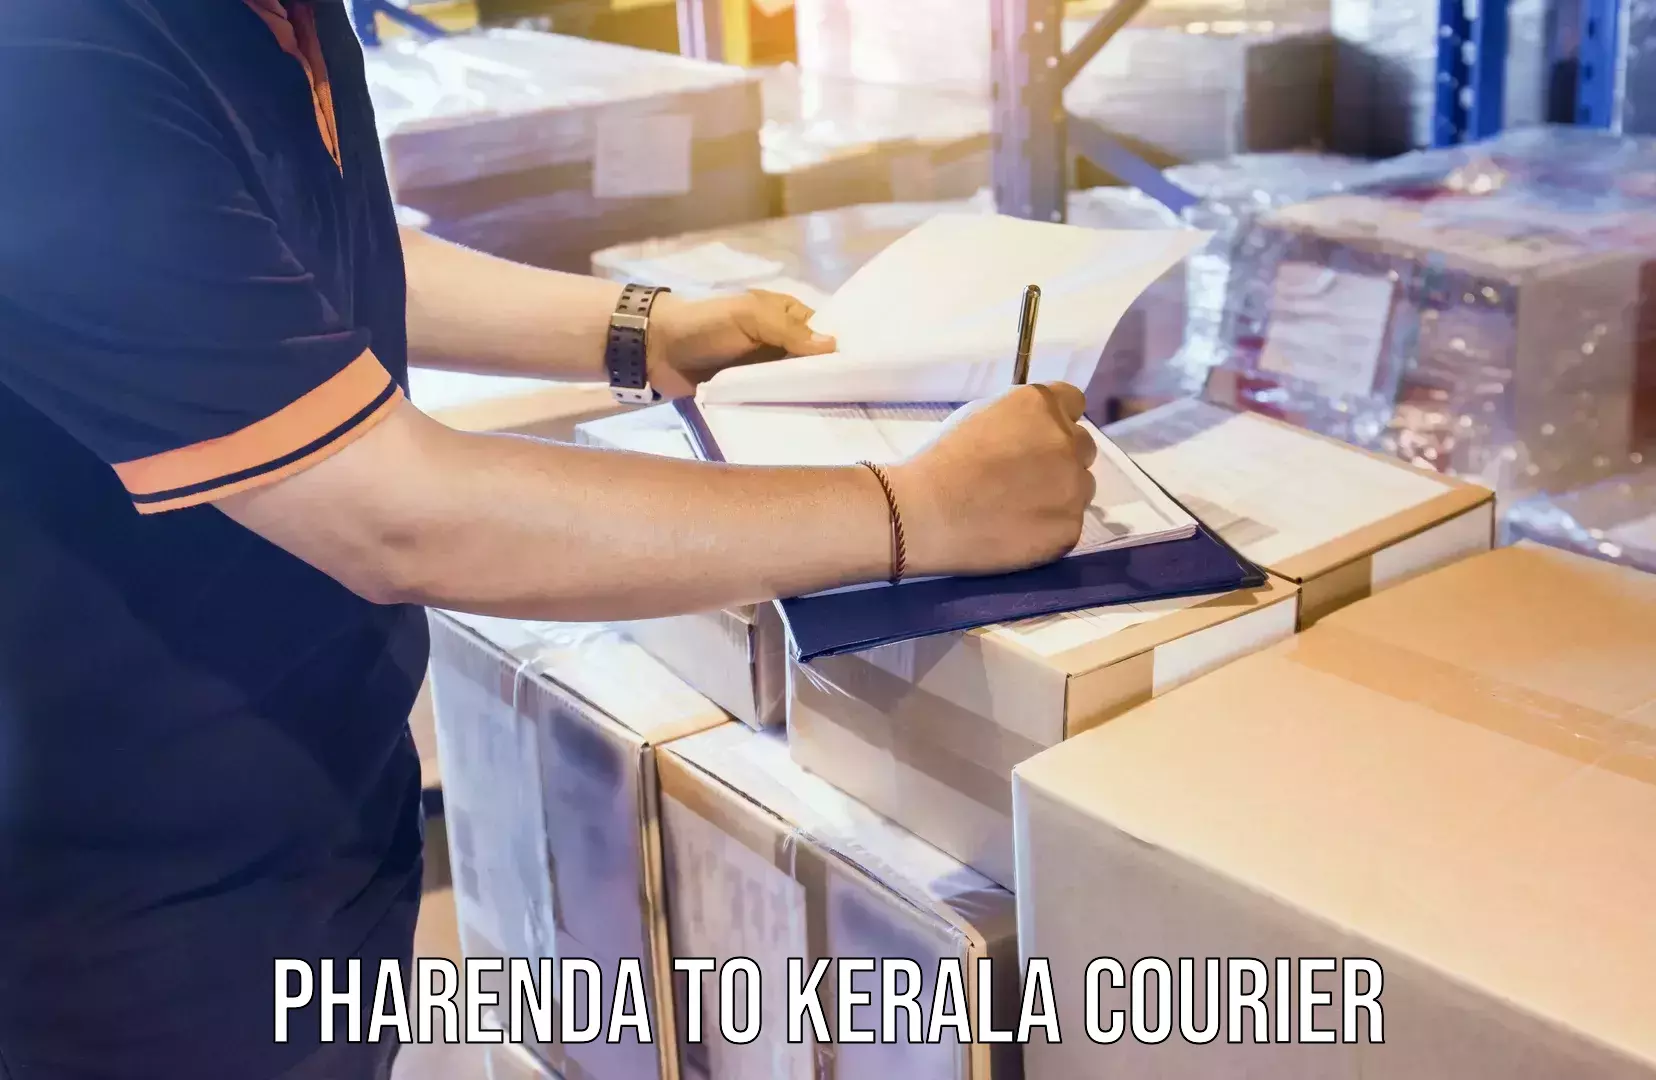 Home goods shifting Pharenda to Kerala